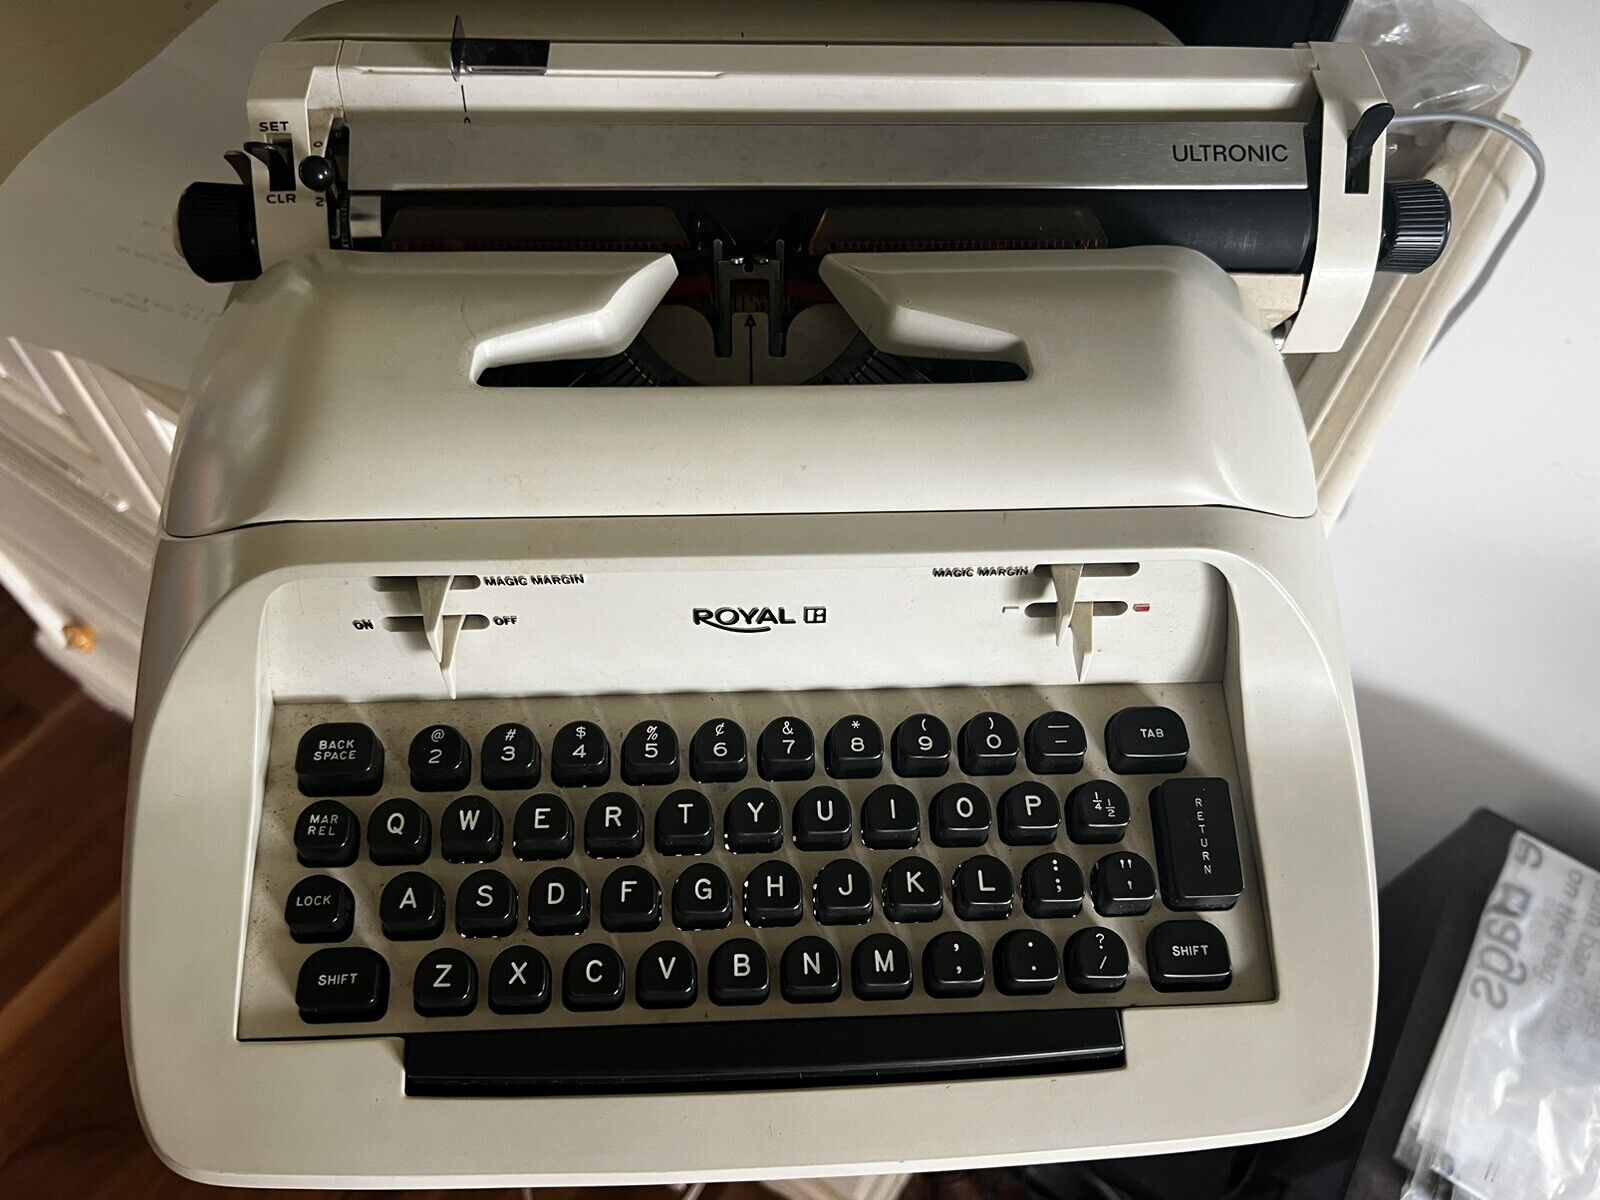 VTG Vintage 1960’s Royal Ultronic Portable Typewriter w/ Hard Case.. Working